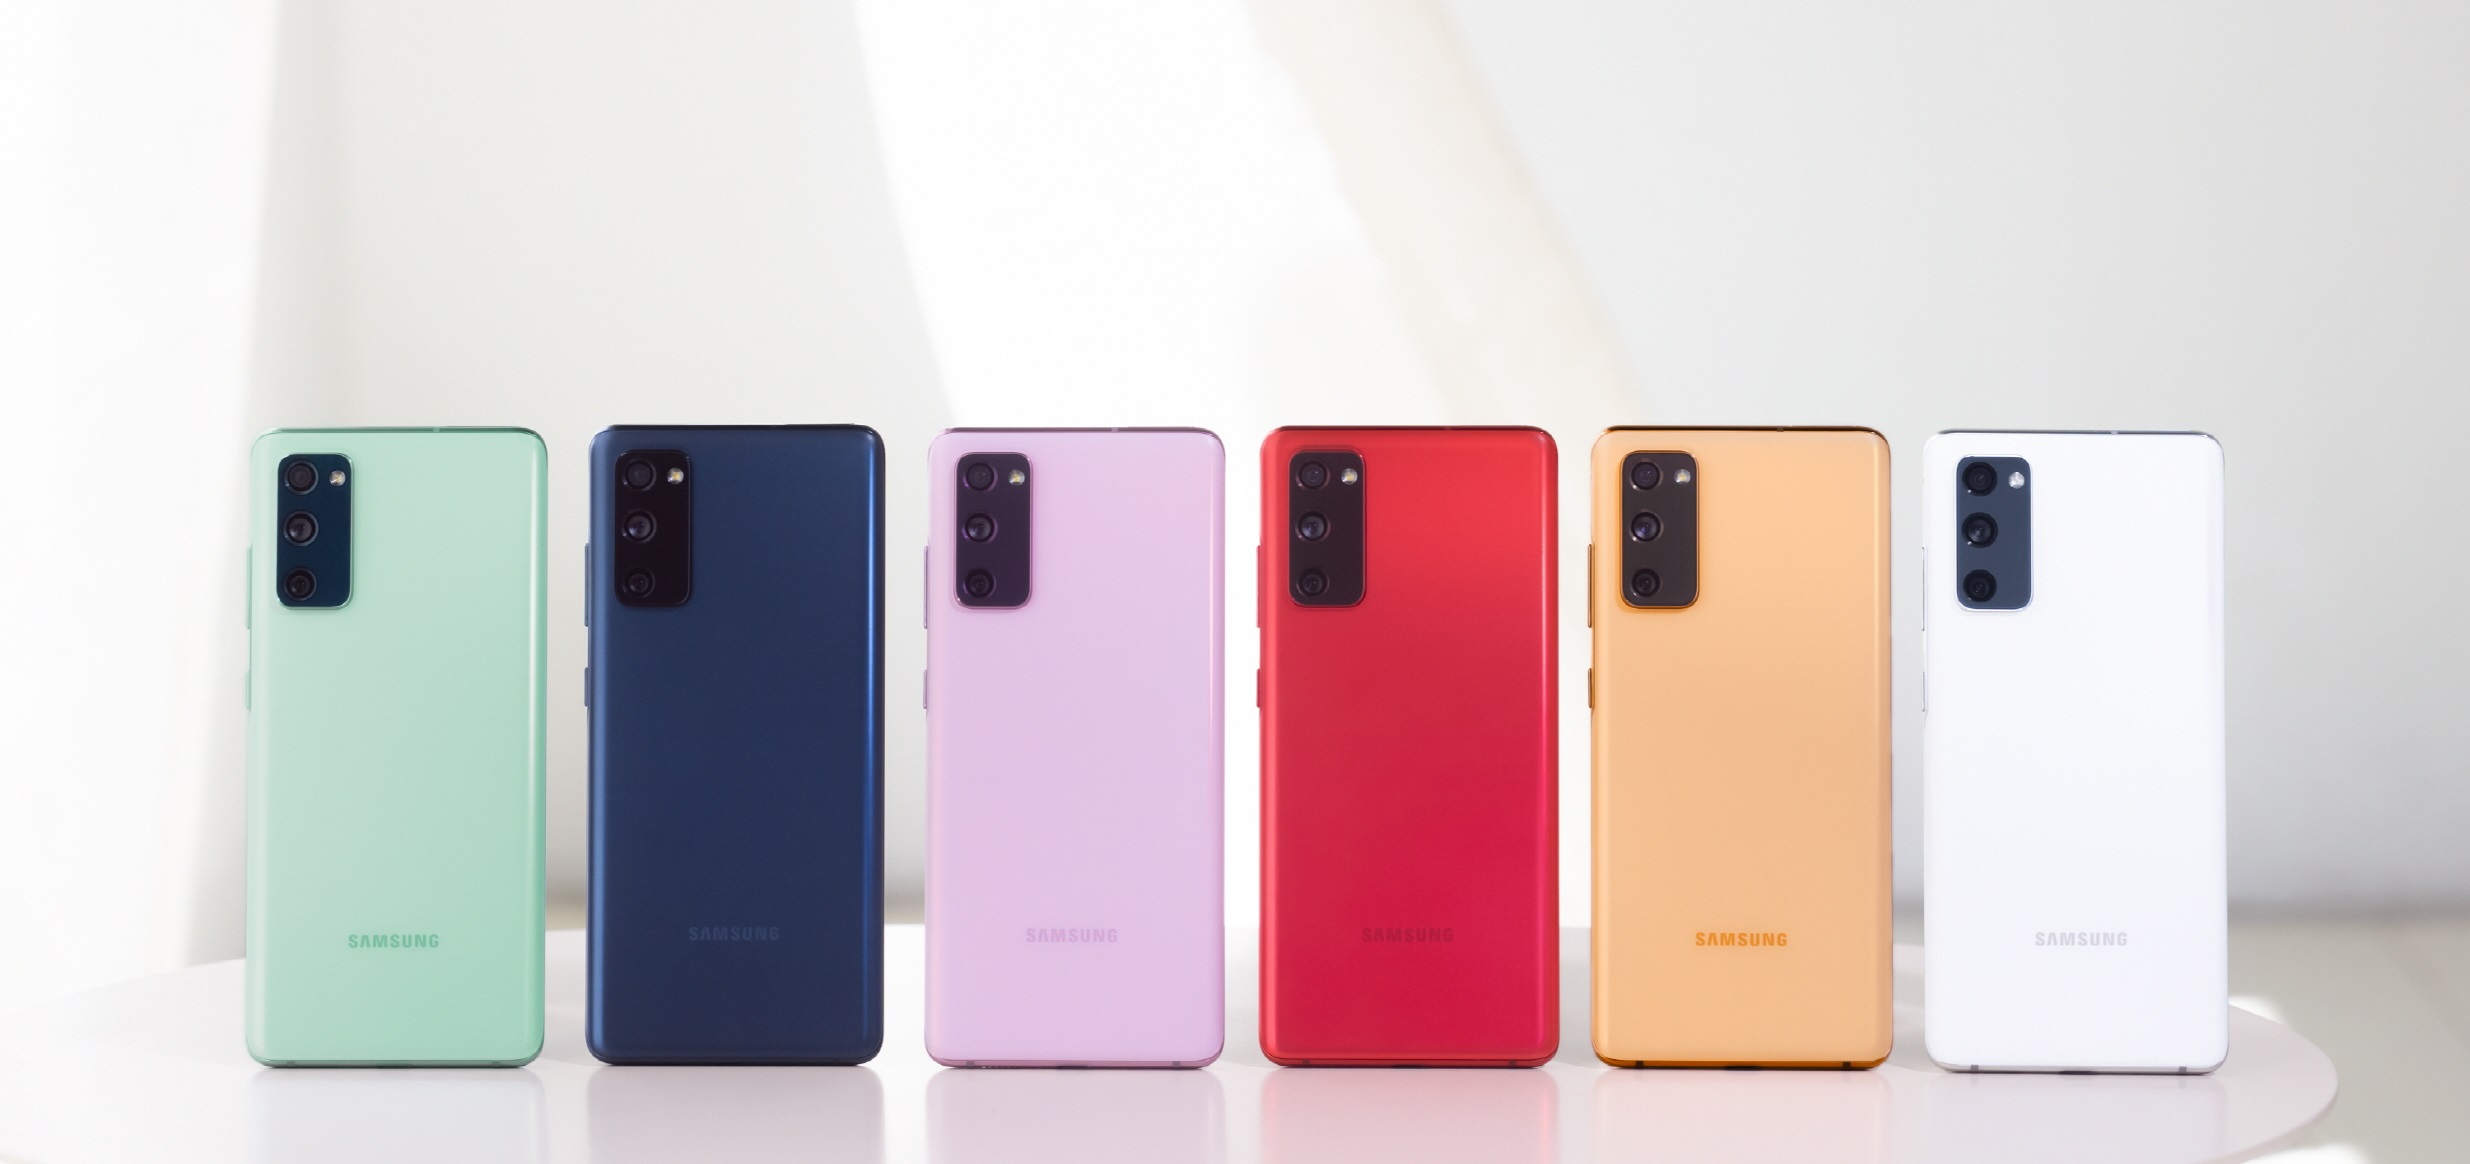 Samsung ha vendido más de 10 millones de teléfonos inteligentes Galaxy S20 FE, uno de los modelos Galaxy con mejor rendimiento en 2021